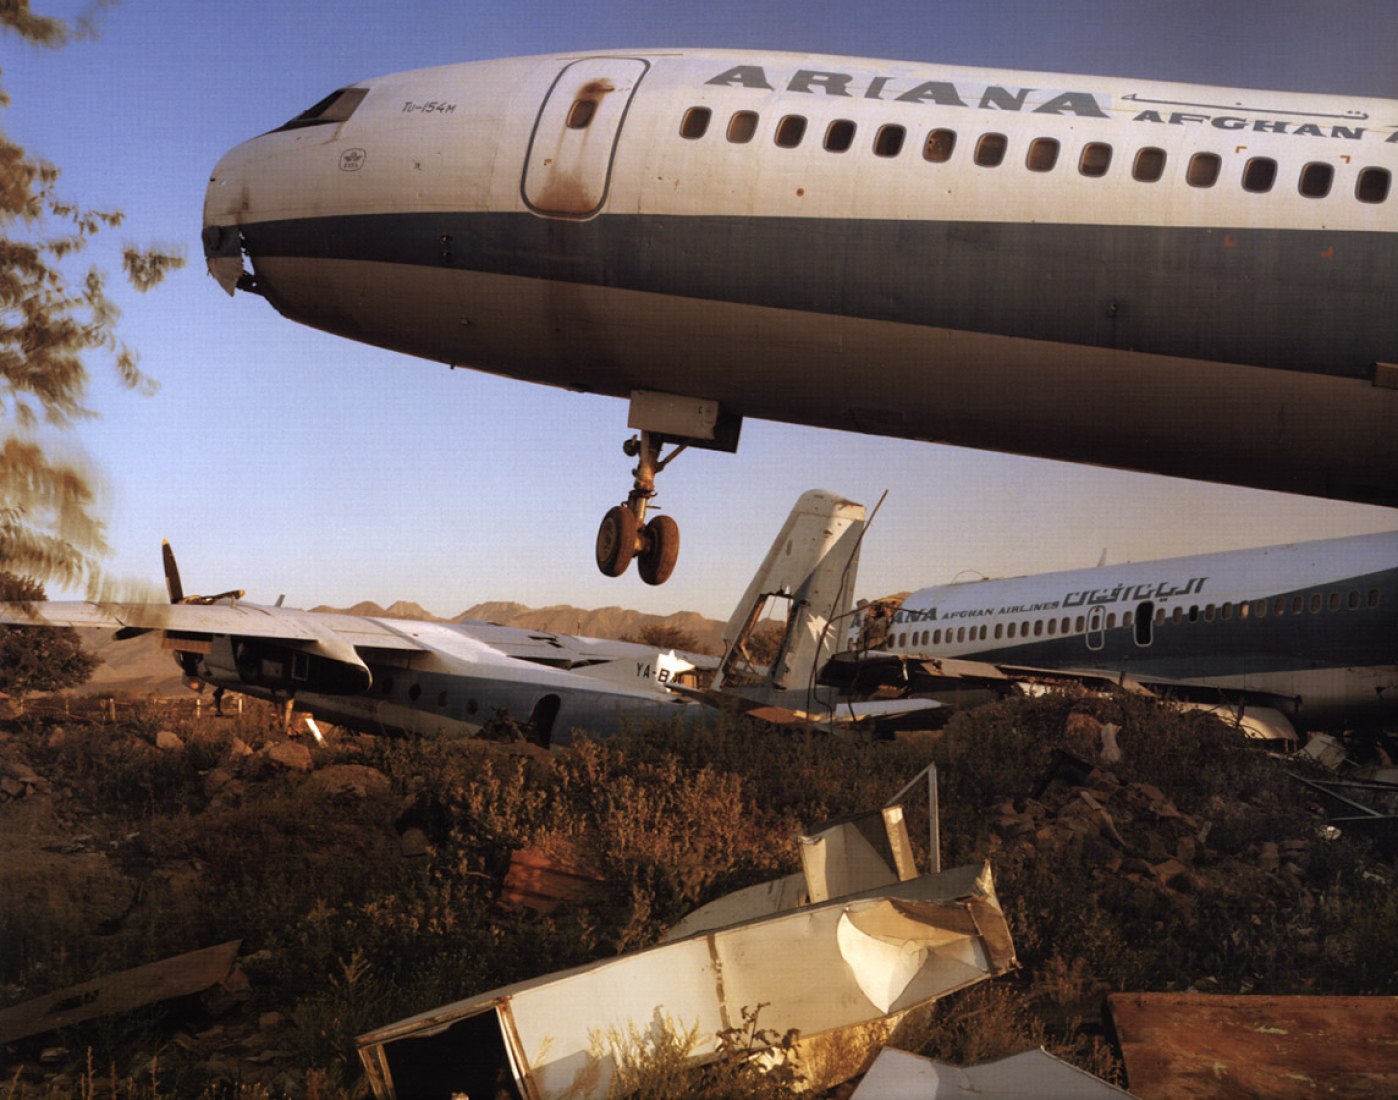 Aviones de la aerolinea Wrecked Ariana Afghan Airlines en el aeropuerto de Kabul en una zona minada. Por Simon Norfolk